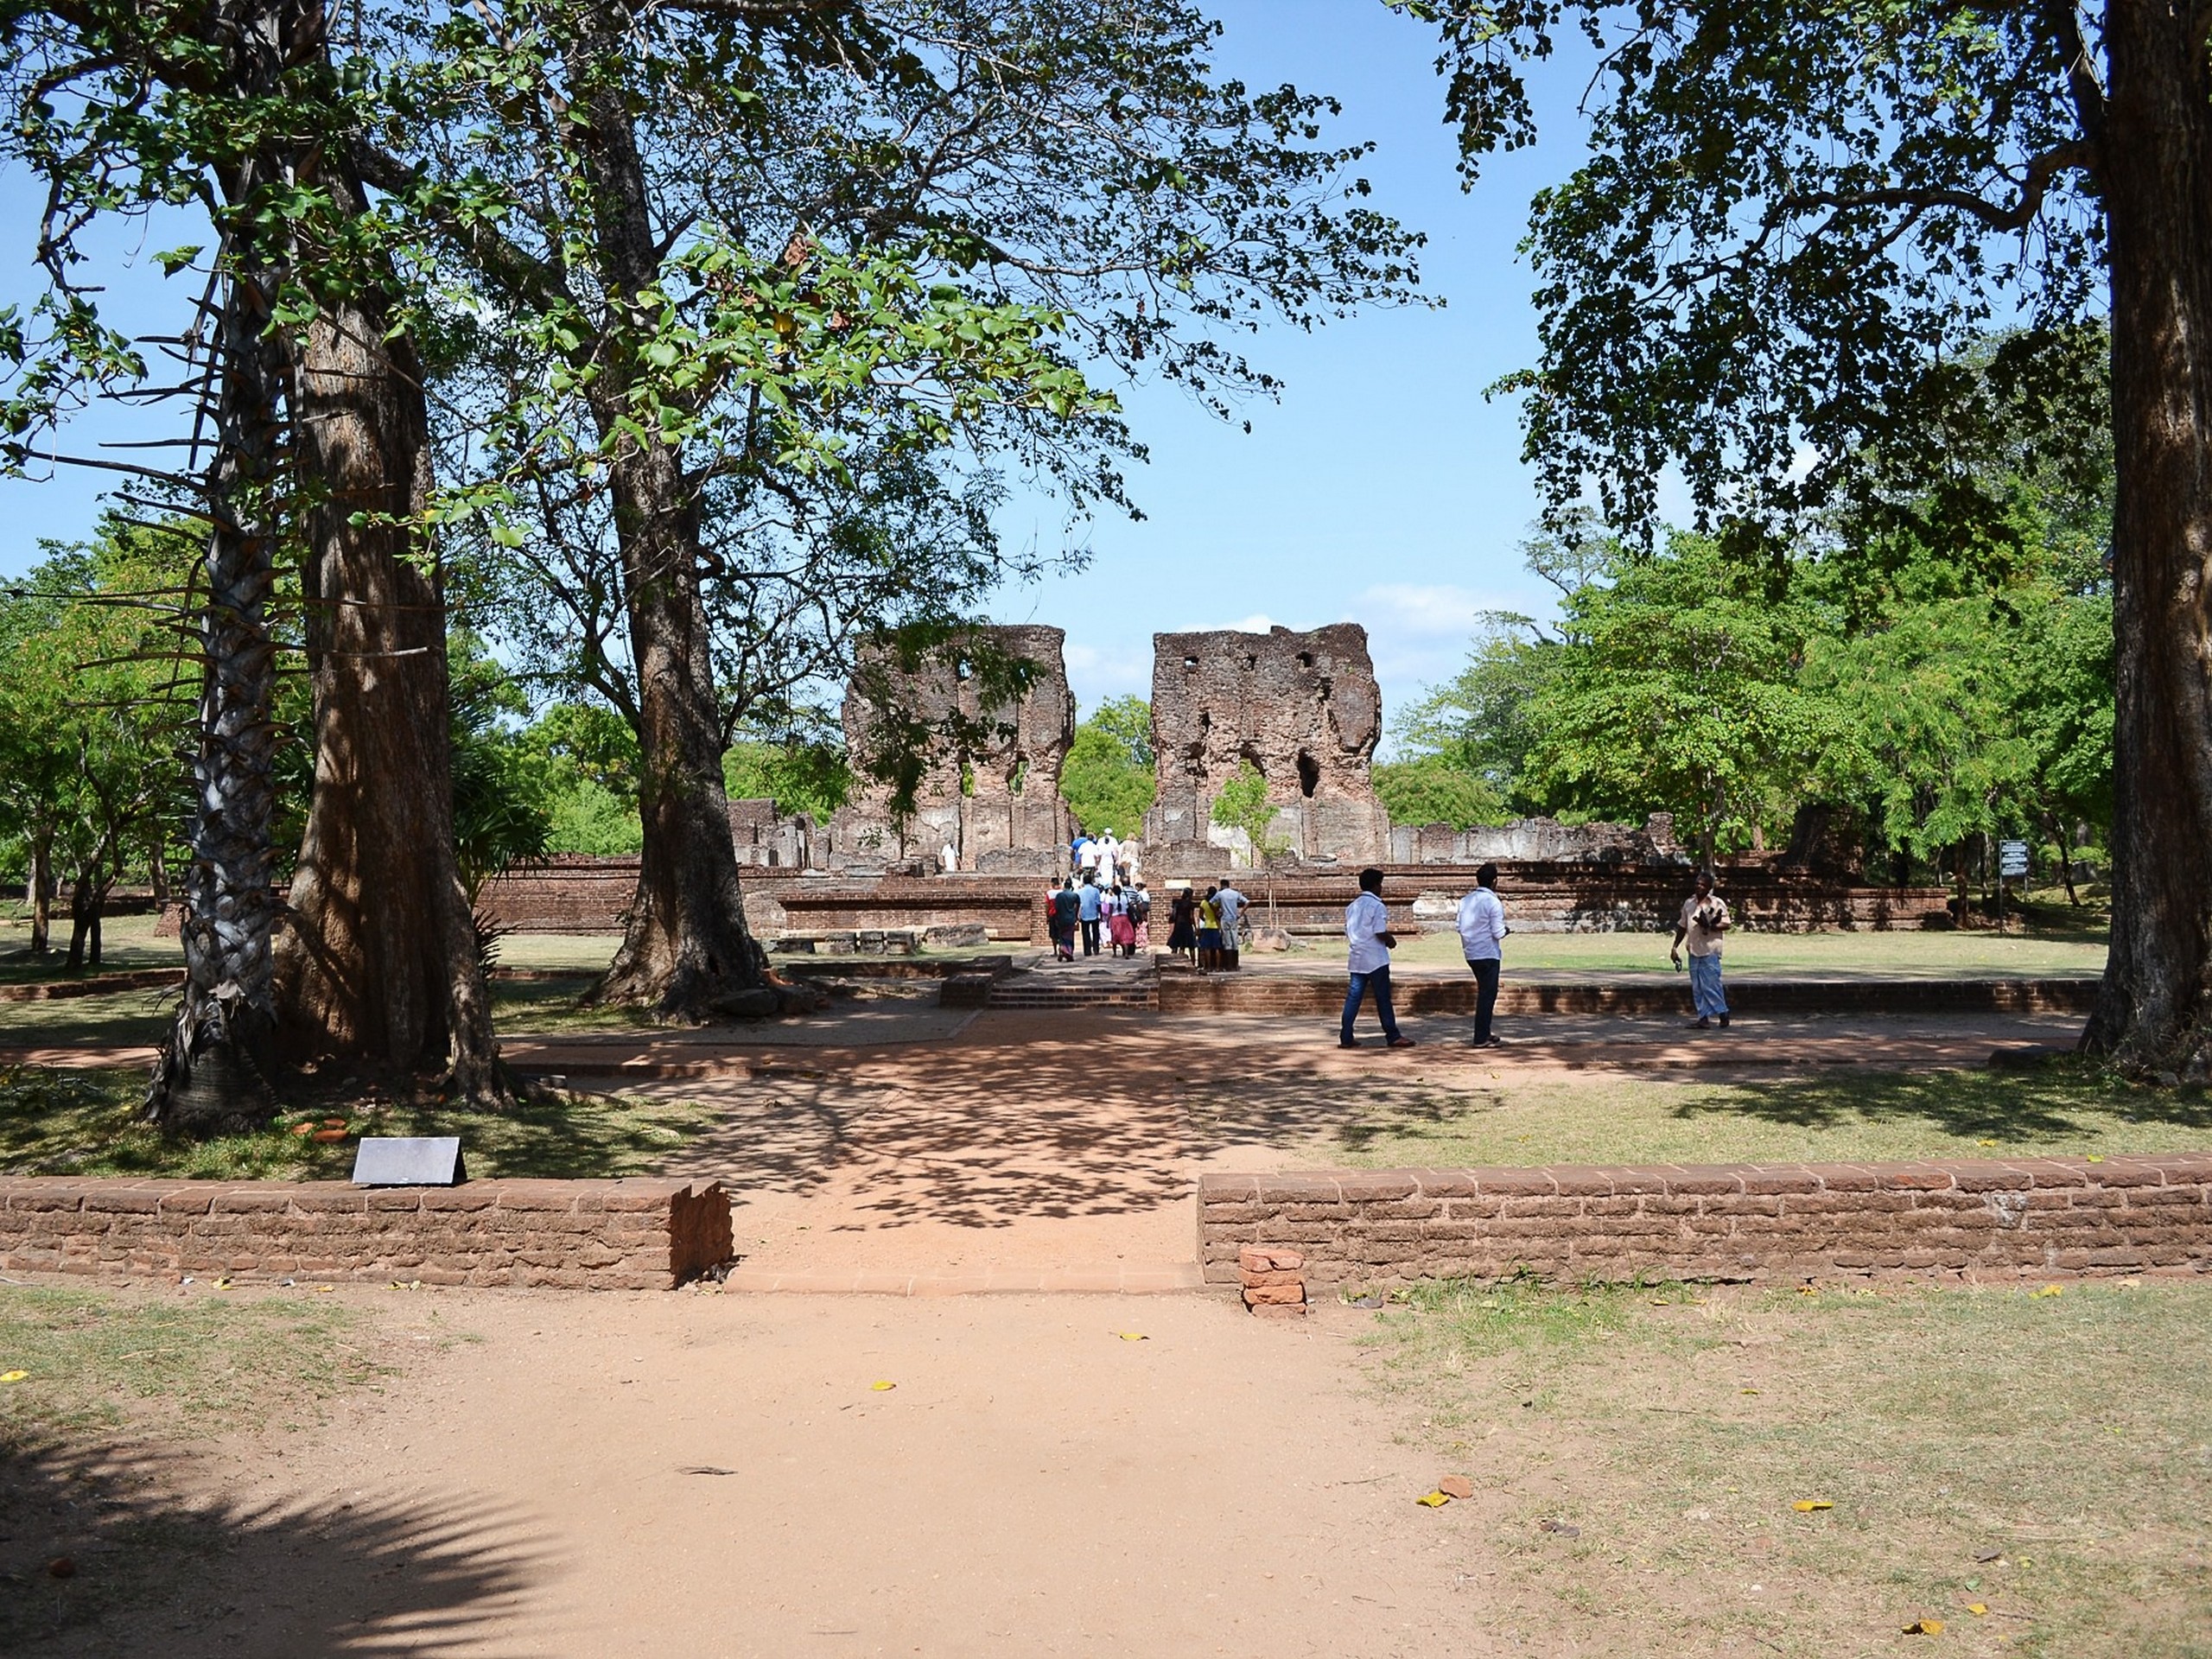 Visiting old ruins in Sri Lanka